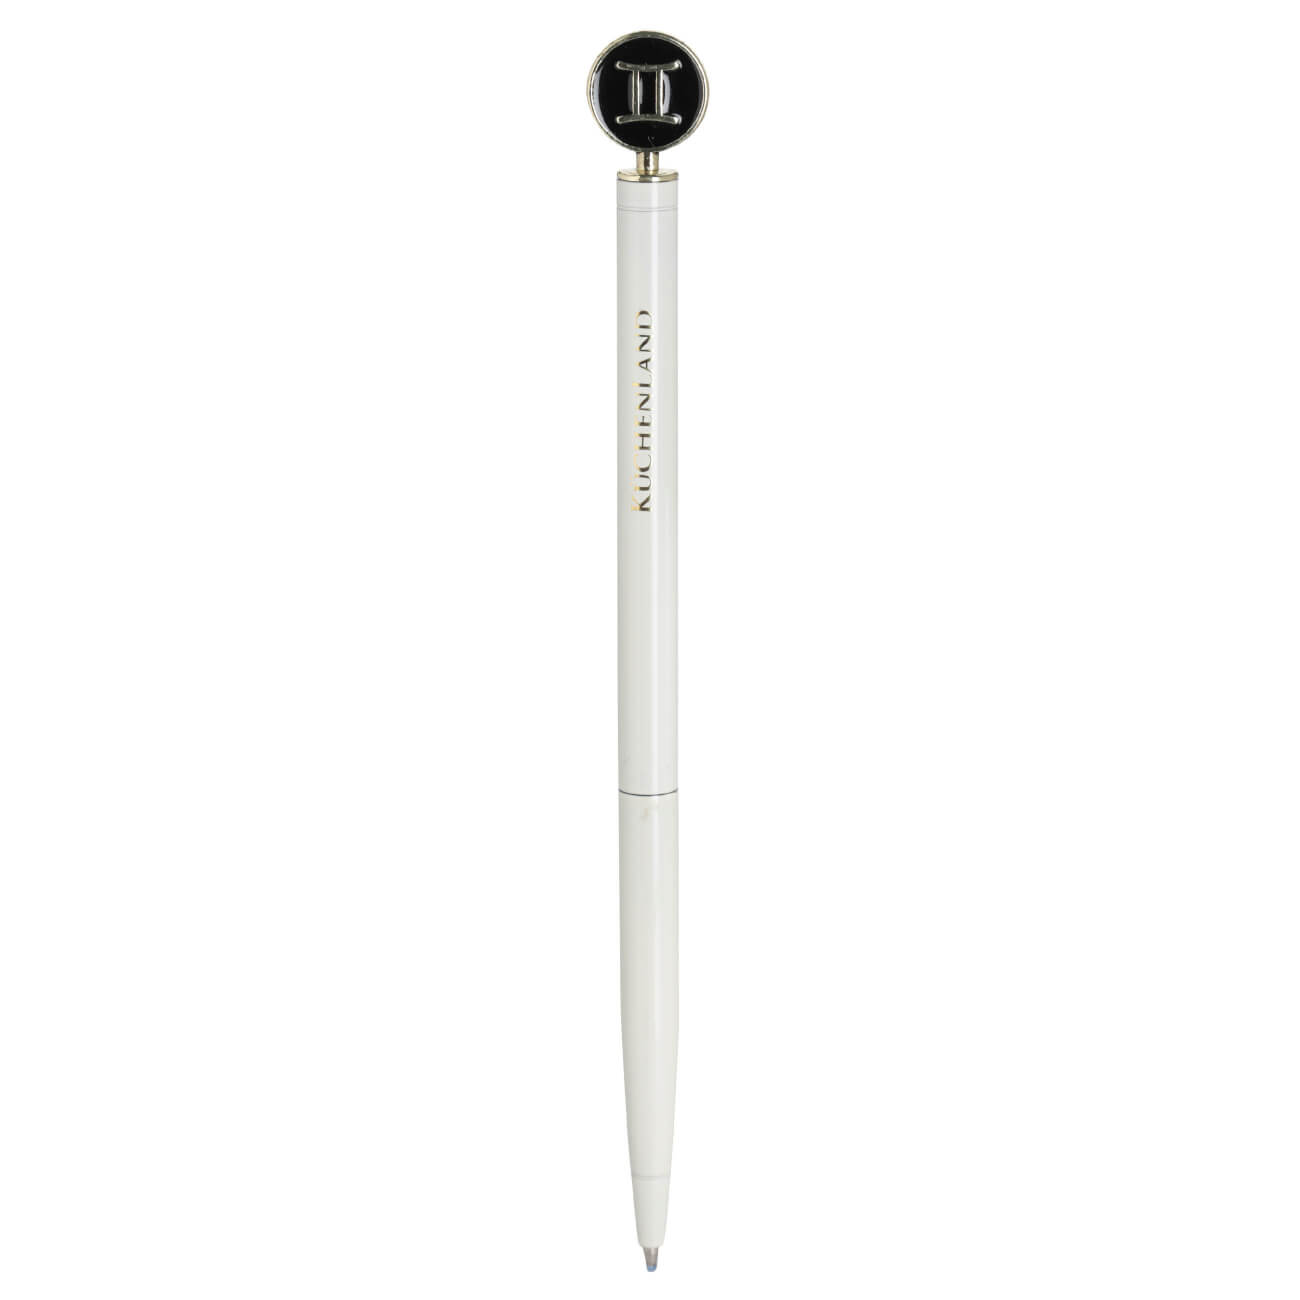 Ручка шариковая, 15 см, с фигуркой, сталь, молочно-золотистая, Близнецы, Zodiac ручка подарочная шариковая в кожзам футляре